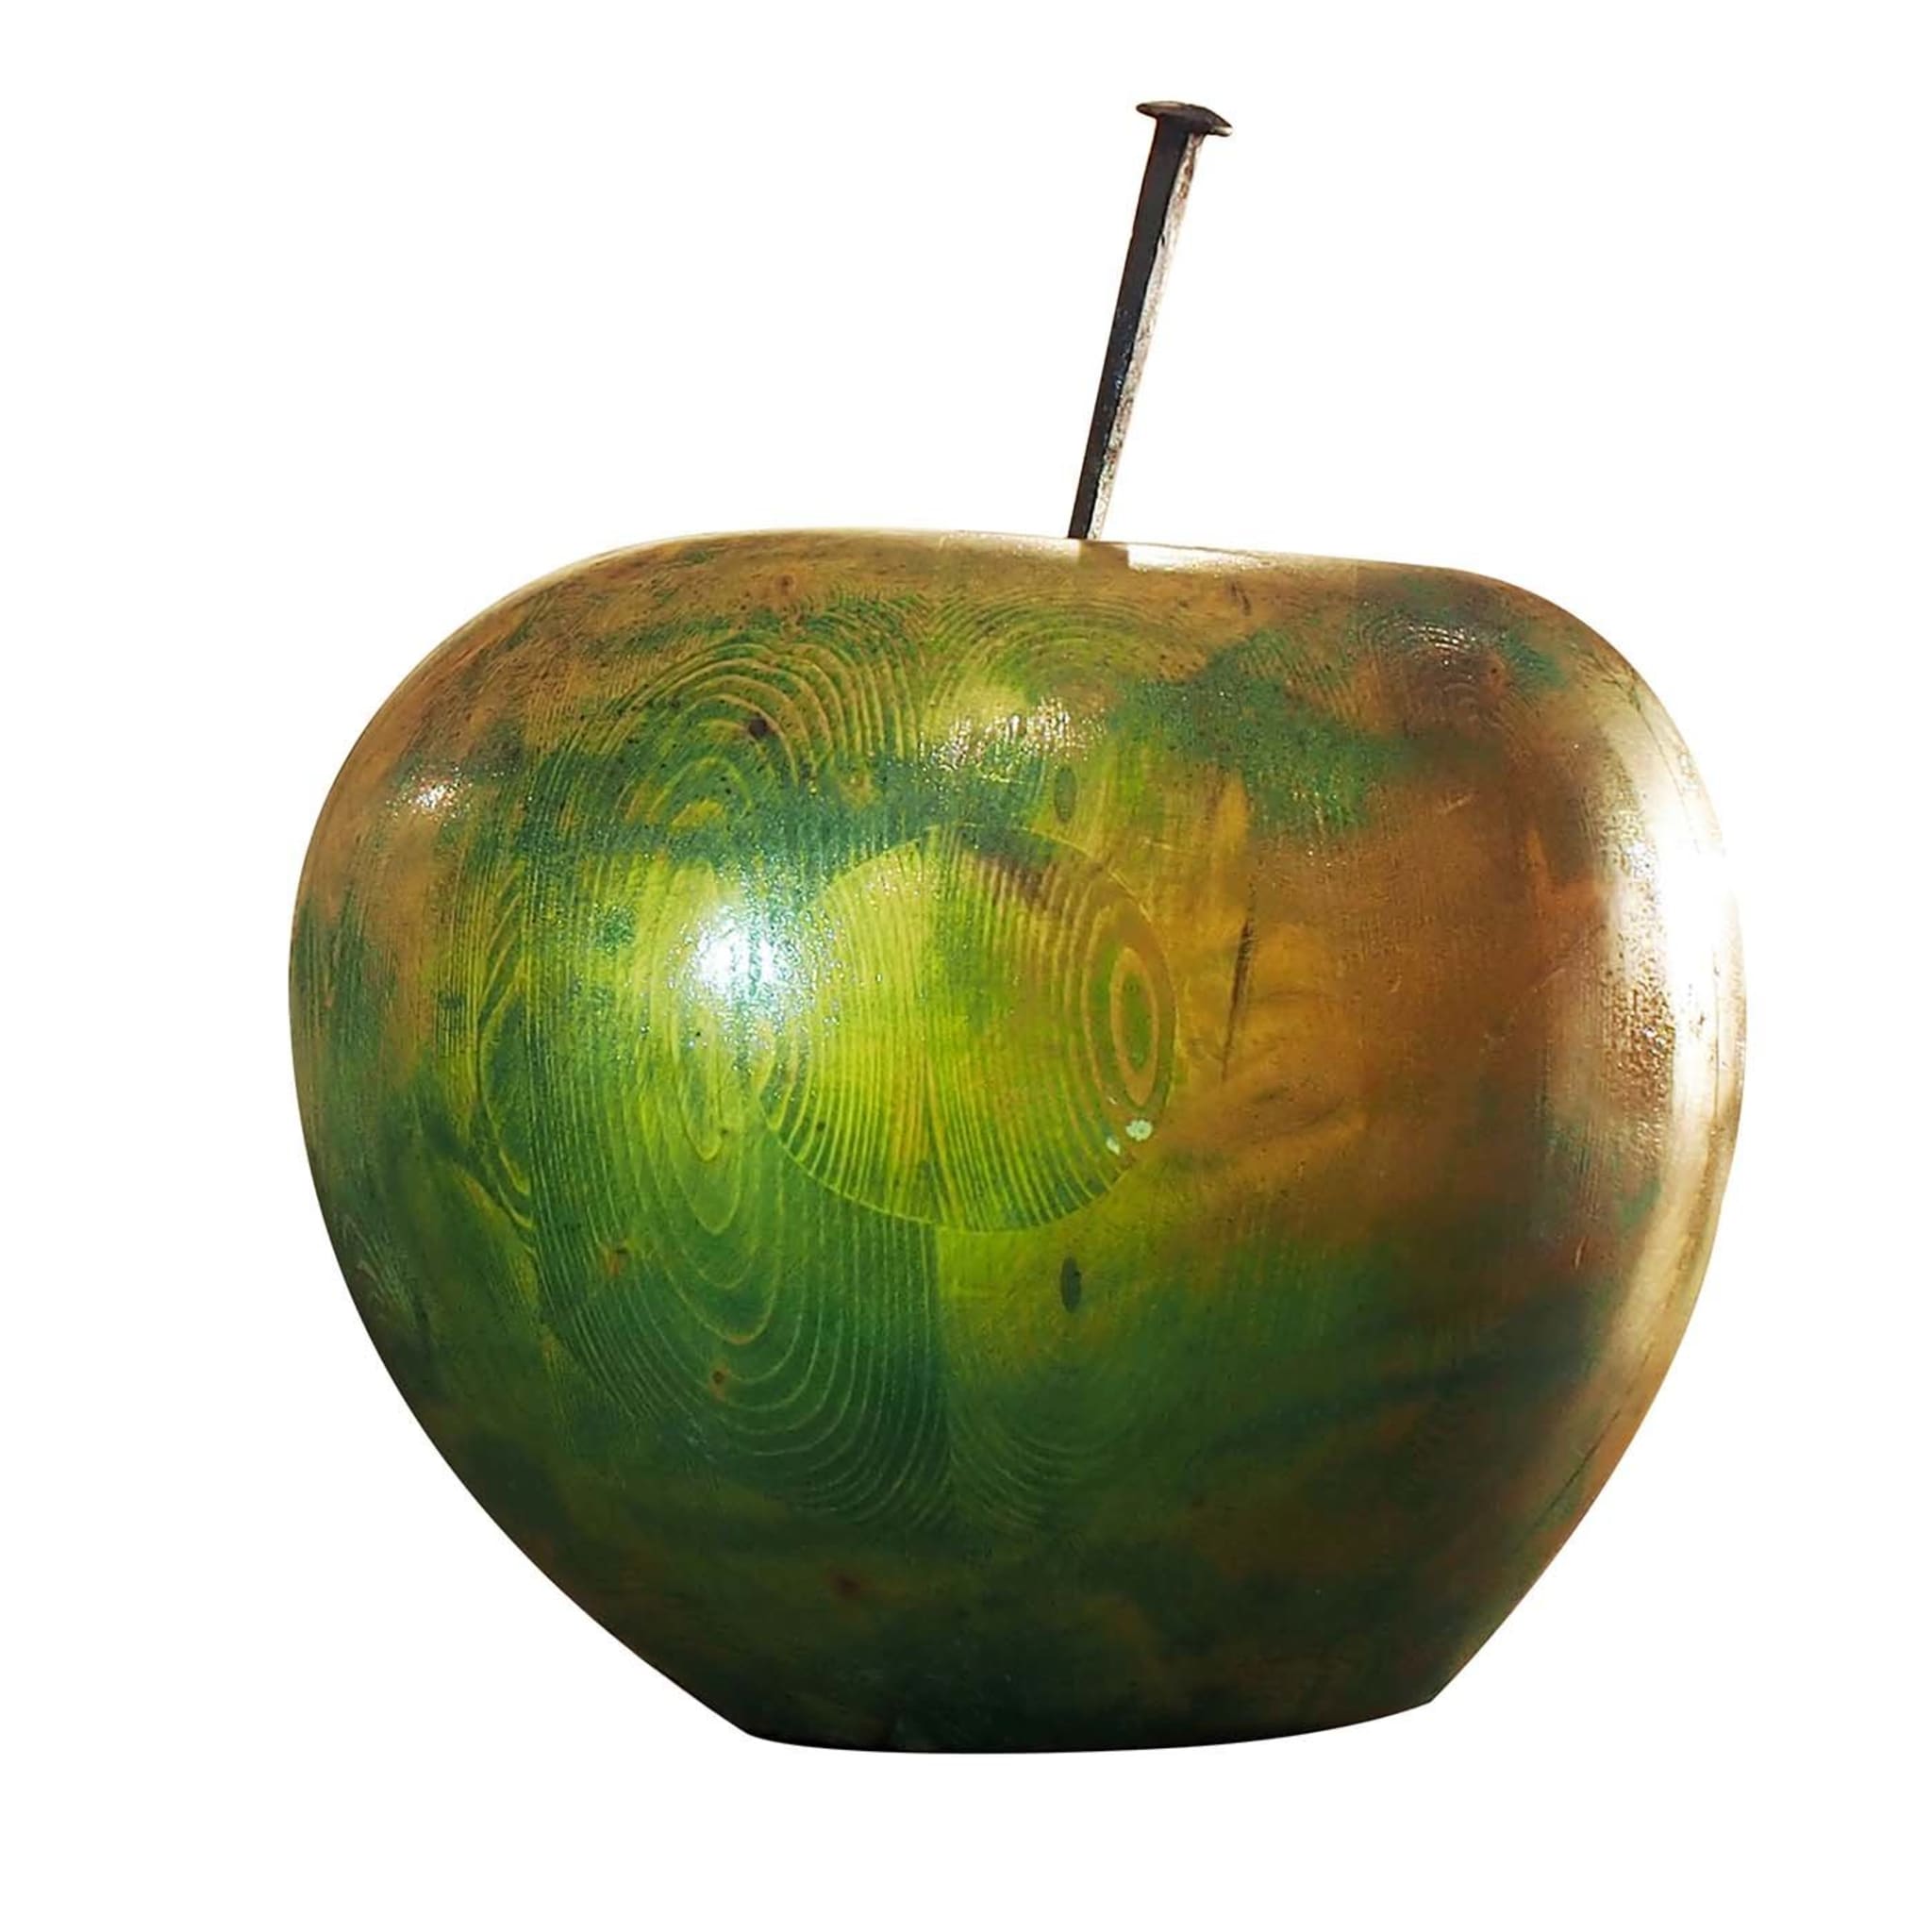 Verblasster grüner Apfel - Hauptansicht